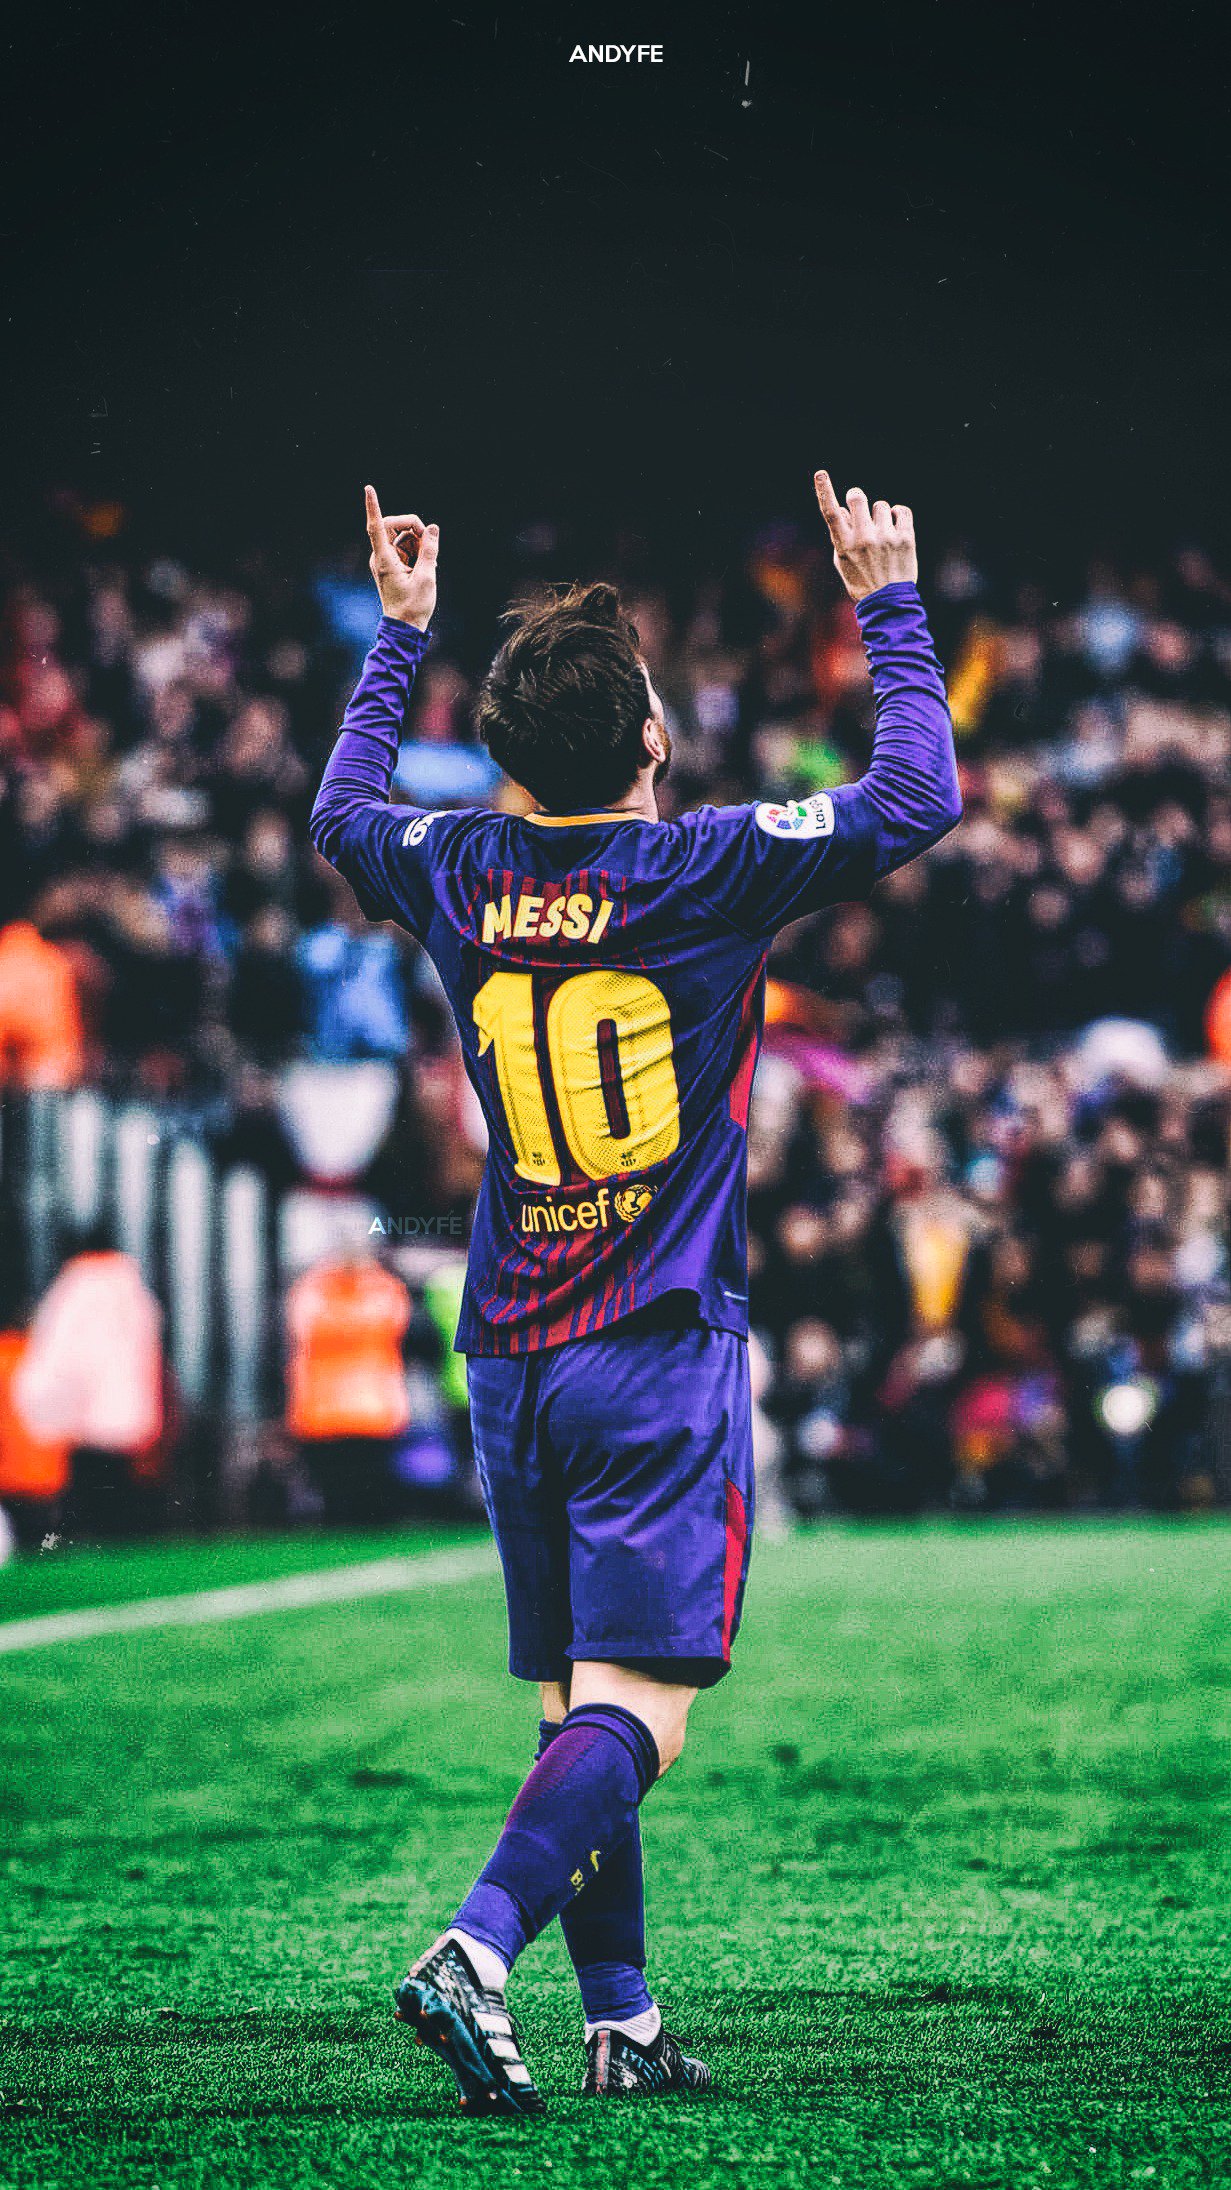 Hình nền Messi đích thân của Andy: Đây là bộ sưu tập độc đáo về Lionel Messi, do chính Andy lựa chọn và thiết kế bởi tay đôi mình. Với những bức ảnh đầy cảm hứng và sáng tạo, bạn sẽ được chứng kiến sự khát khao và tình yêu của ngôi sao này dành cho bóng đá. Hãy nhấp vào ảnh để khám phá thêm về câu chuyện tuyệt vời này!